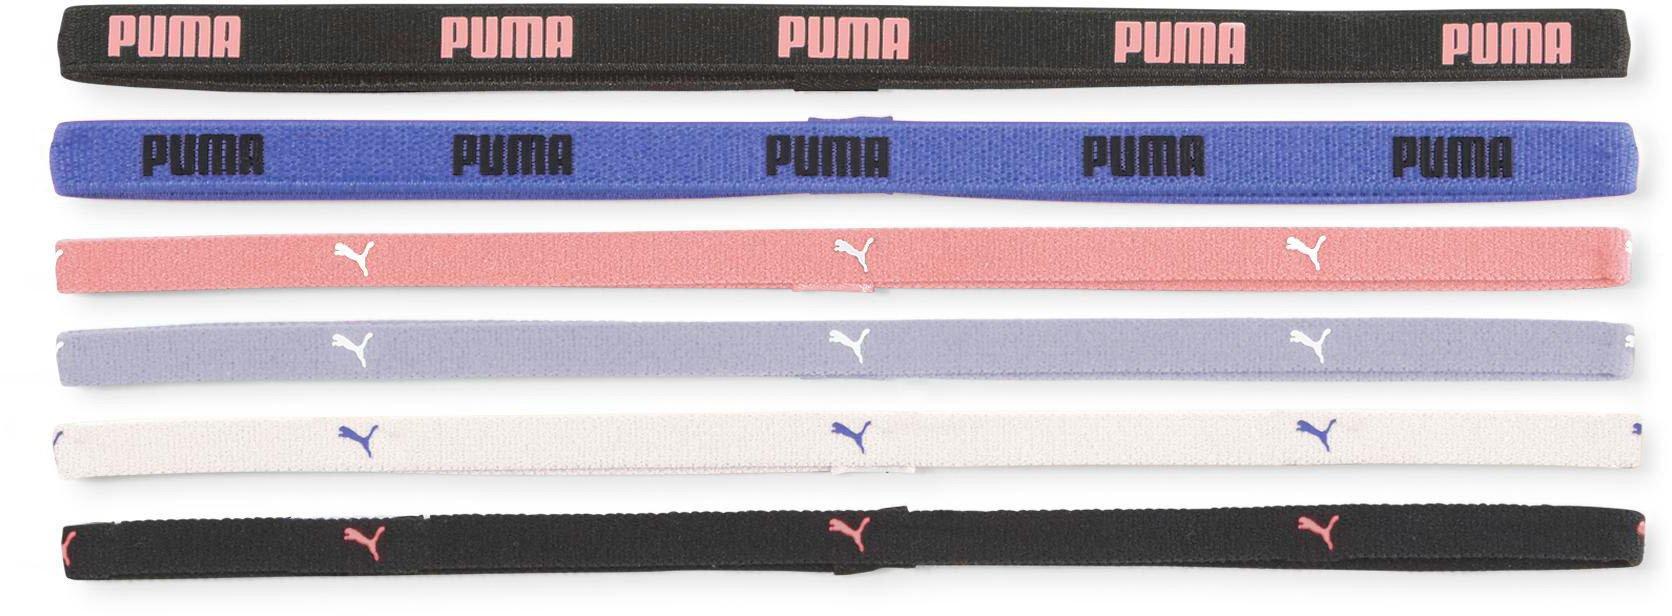 Puma At Sportbands (6Pcs)